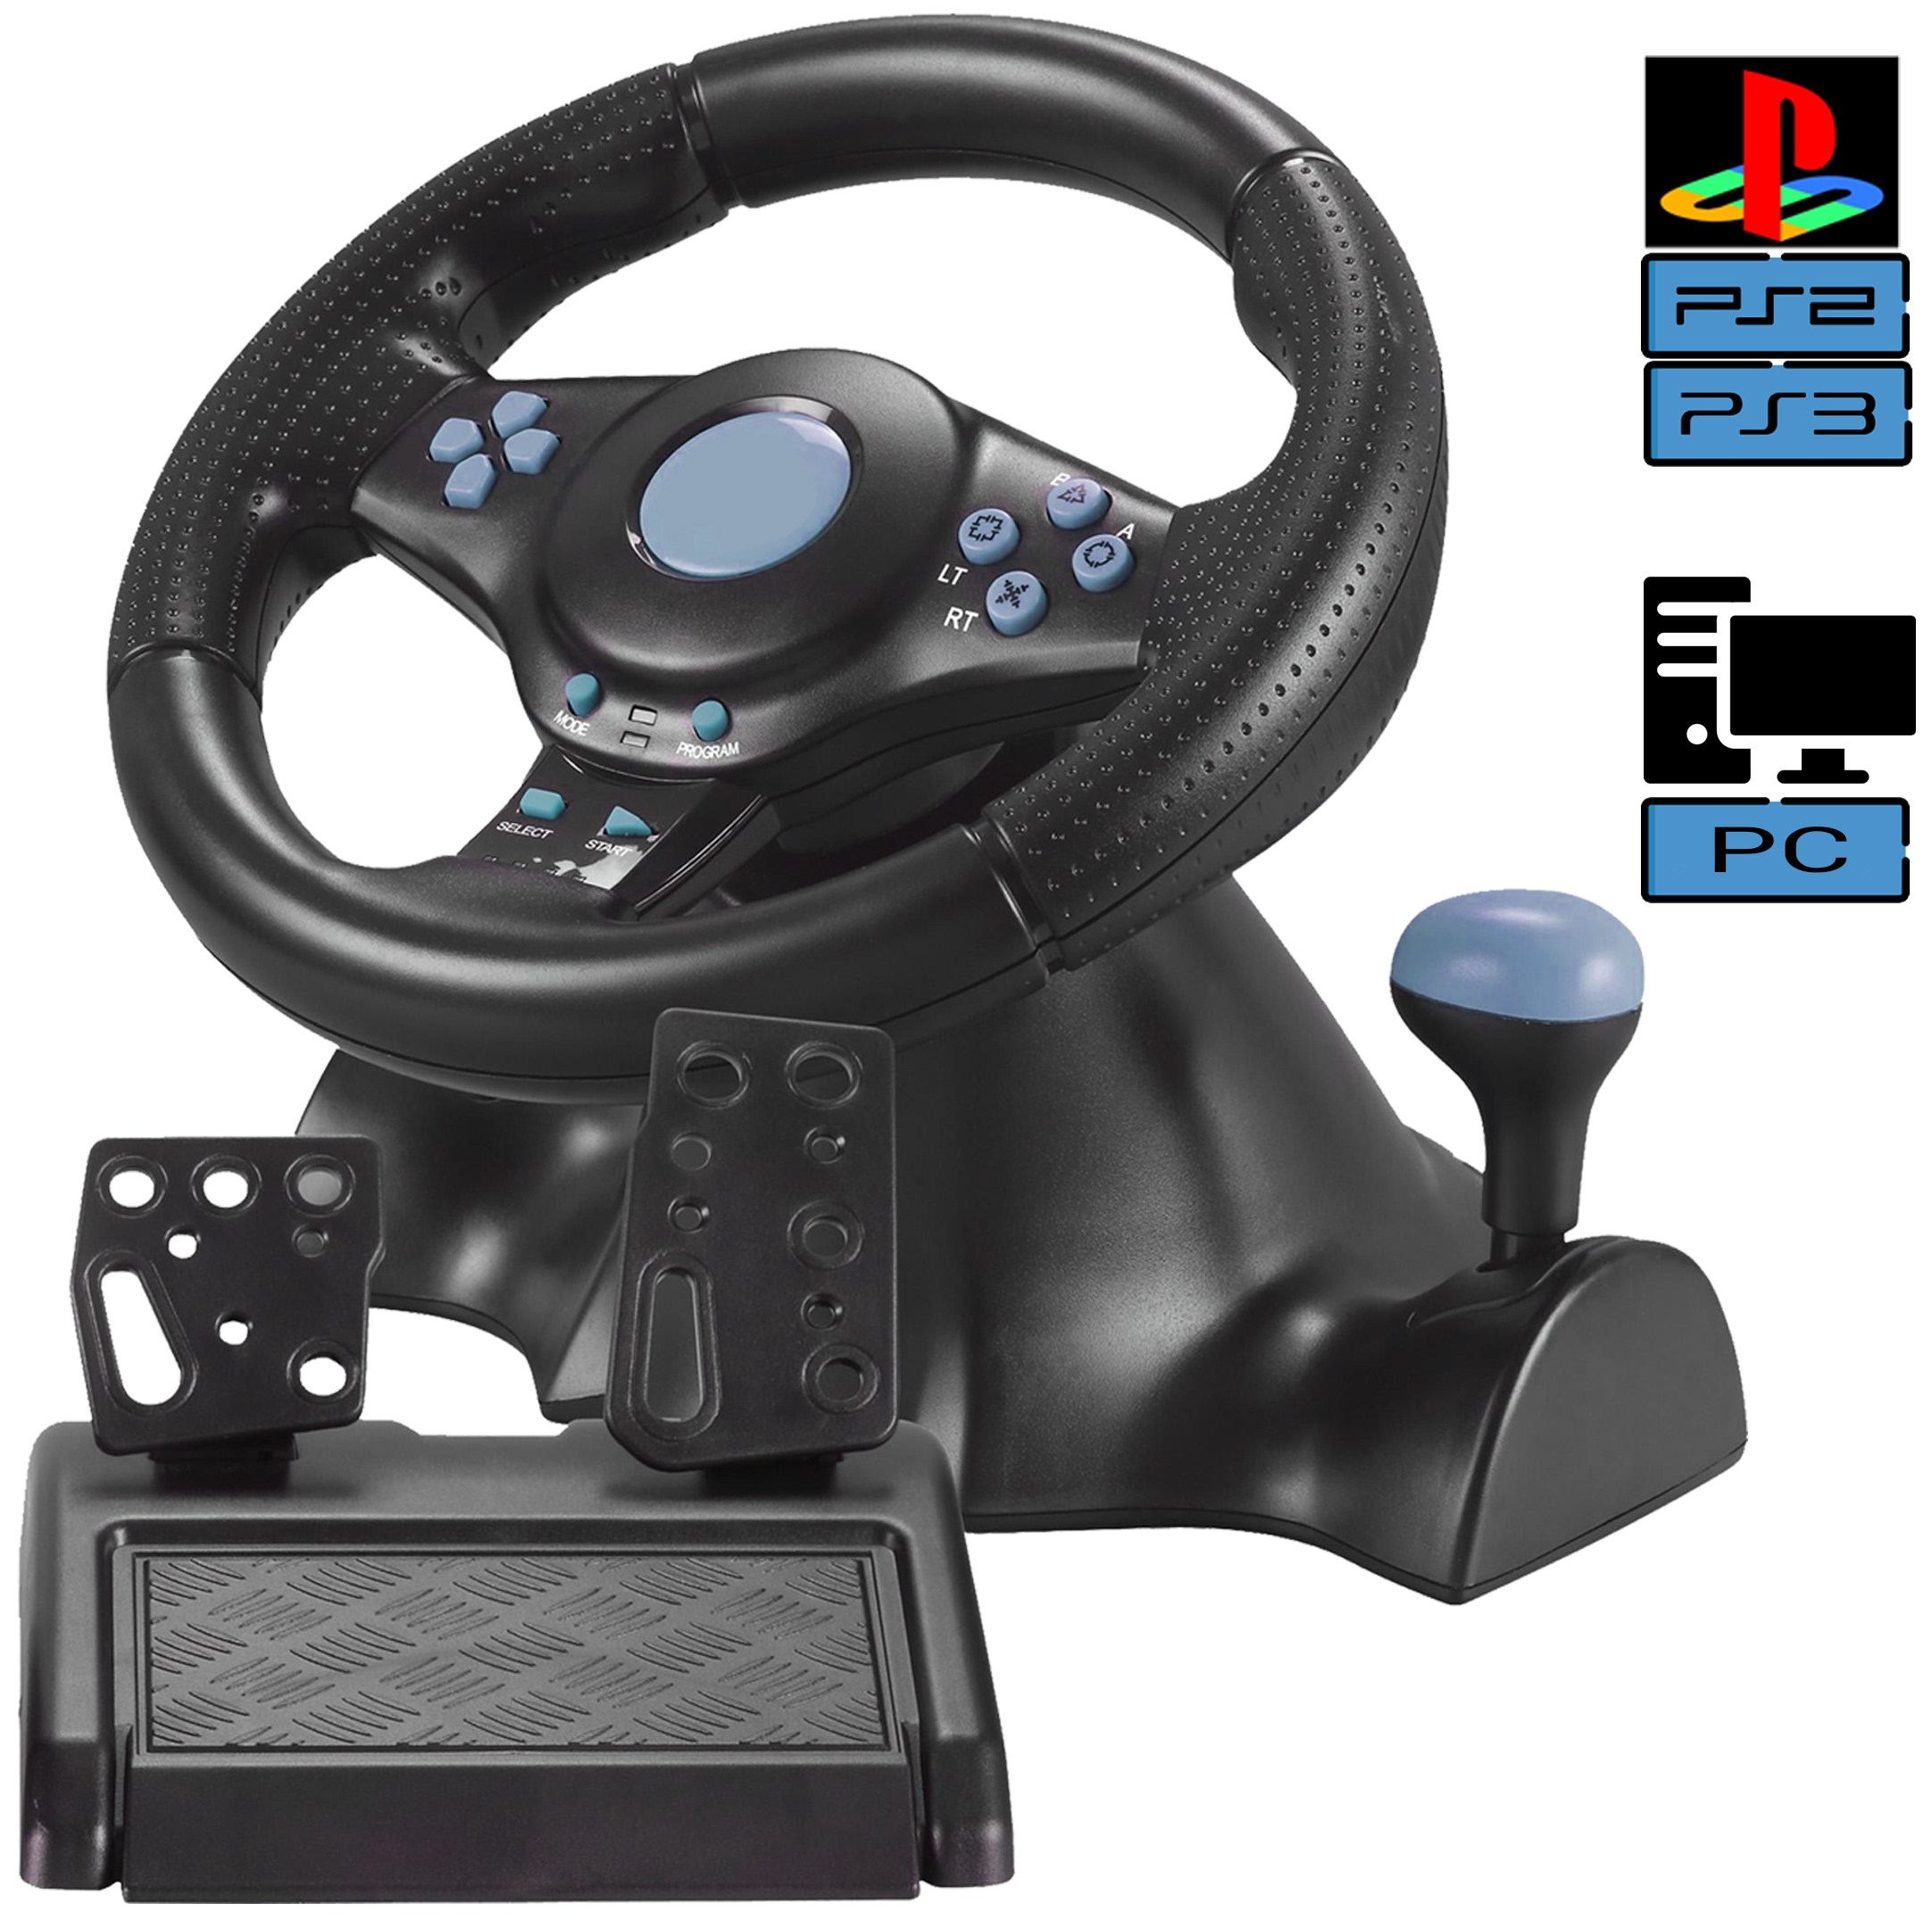 Игровой руль для ПК Vibration Steering wheel руль с педалями и коробкой .